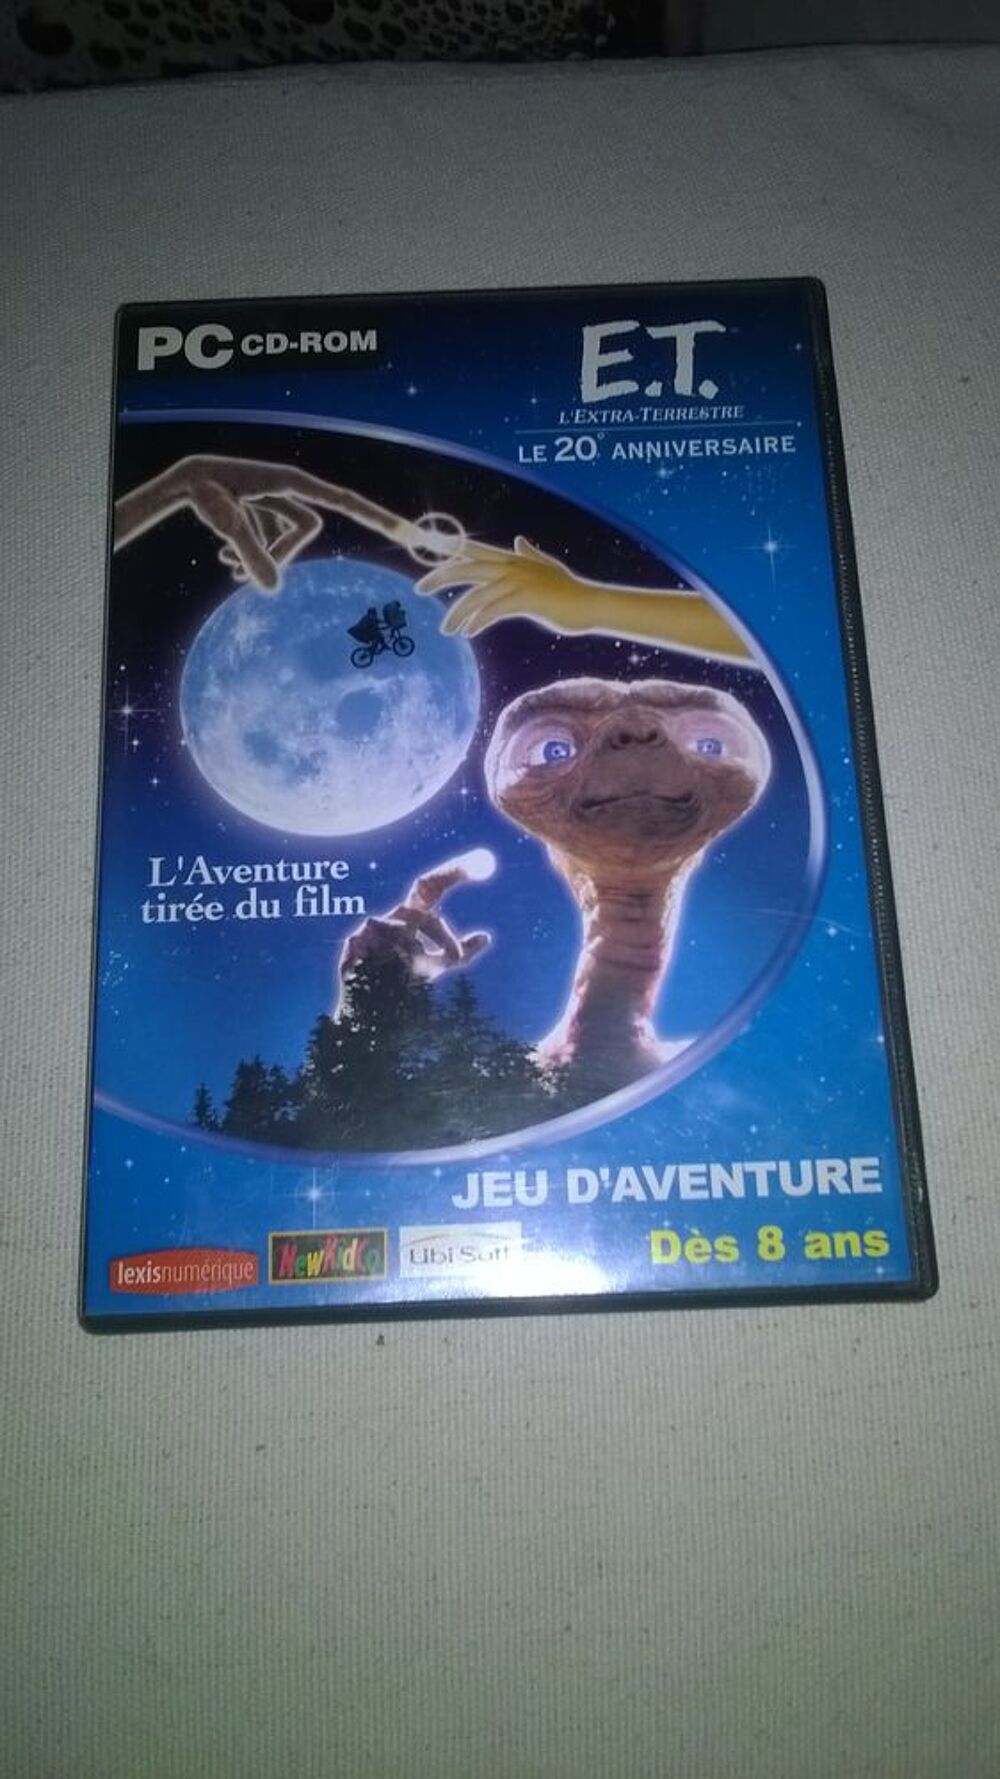 Jeu PC E.T. l'Extra-Terrestre 
2002
Excellent etat
E.T. l Consoles et jeux vidos